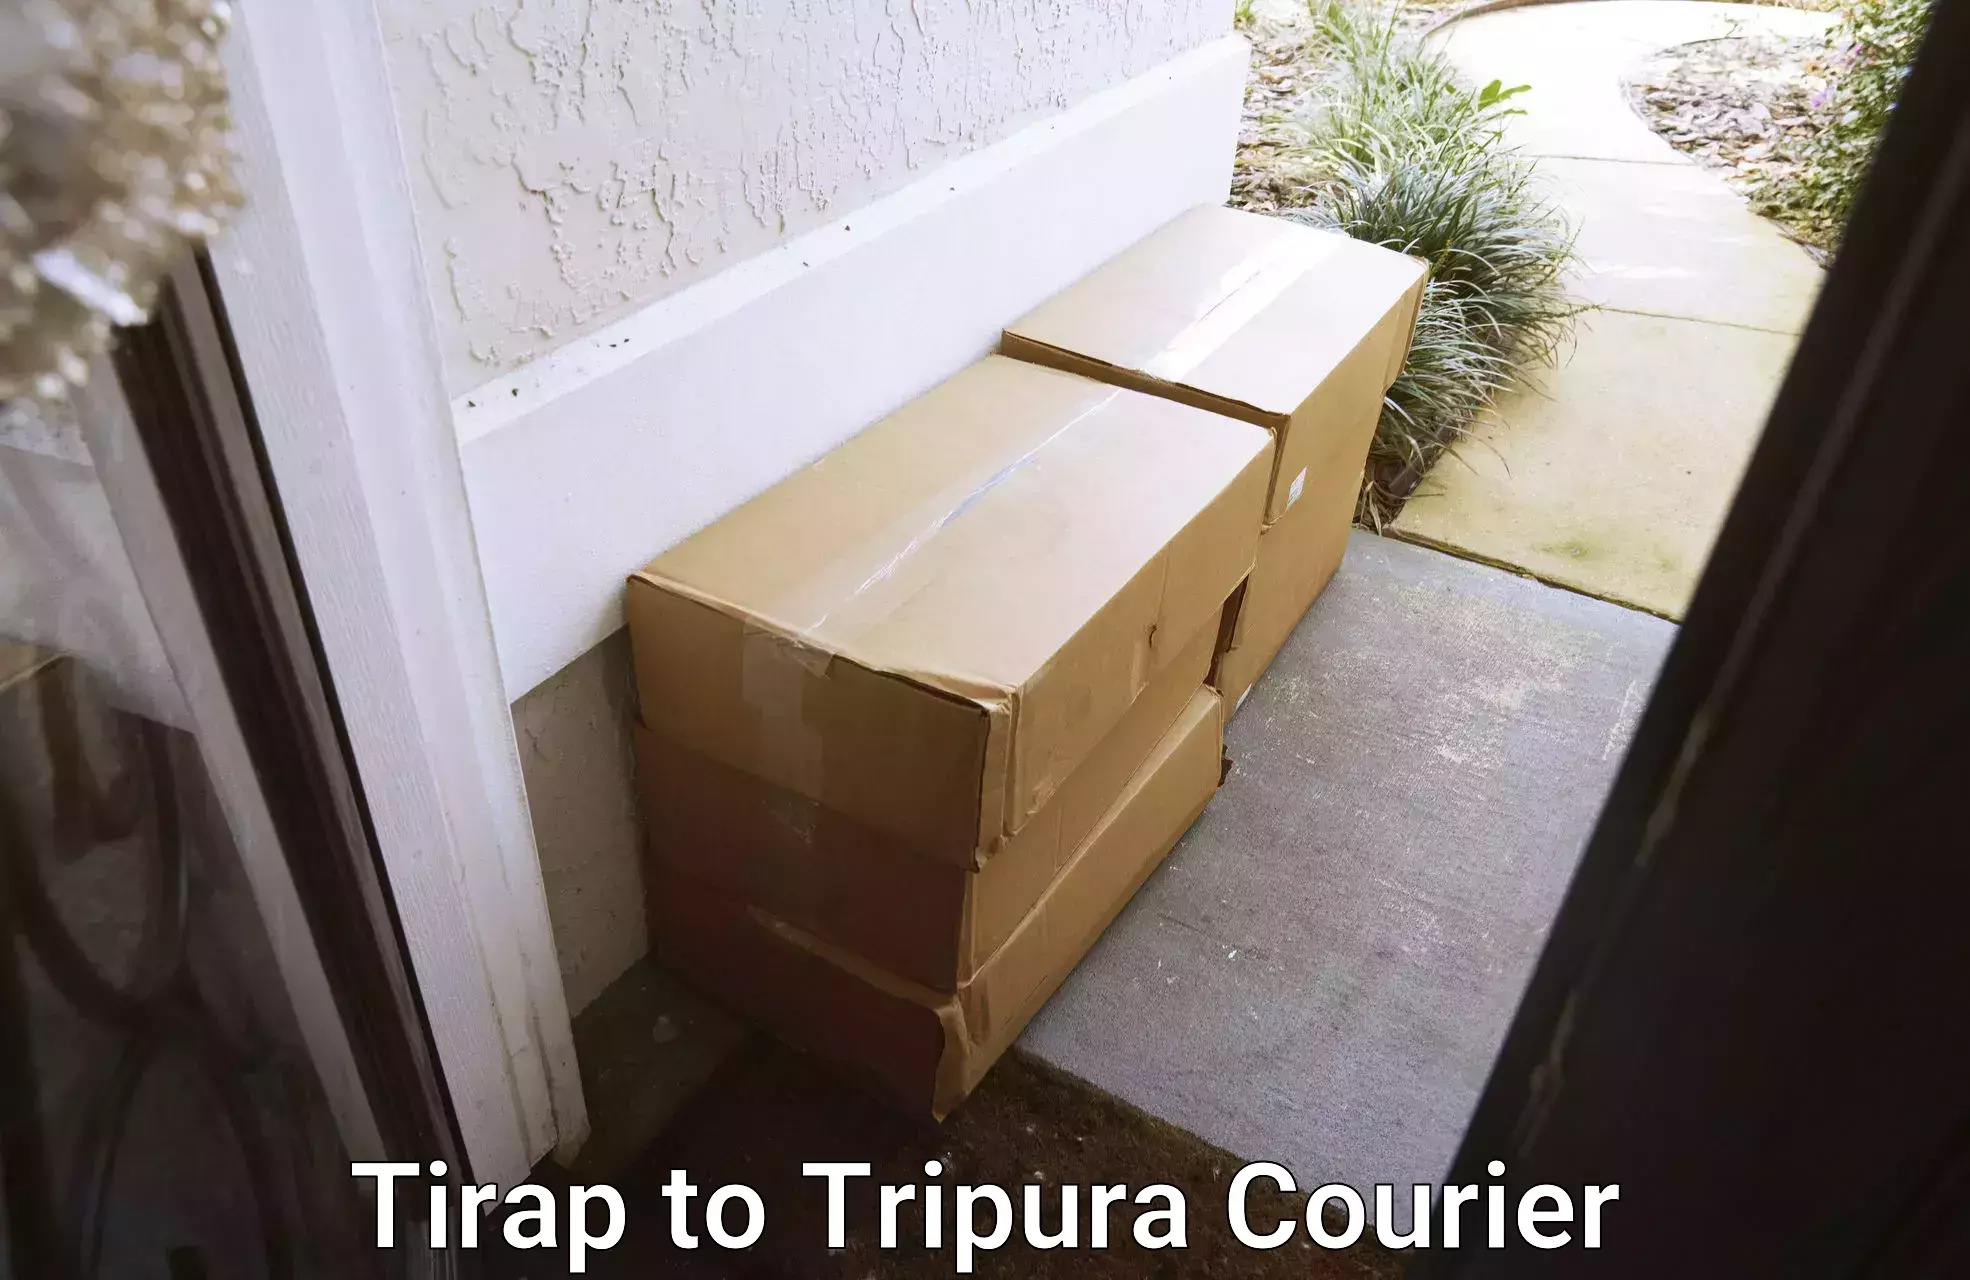 Regular parcel service Tirap to IIIT Agartala